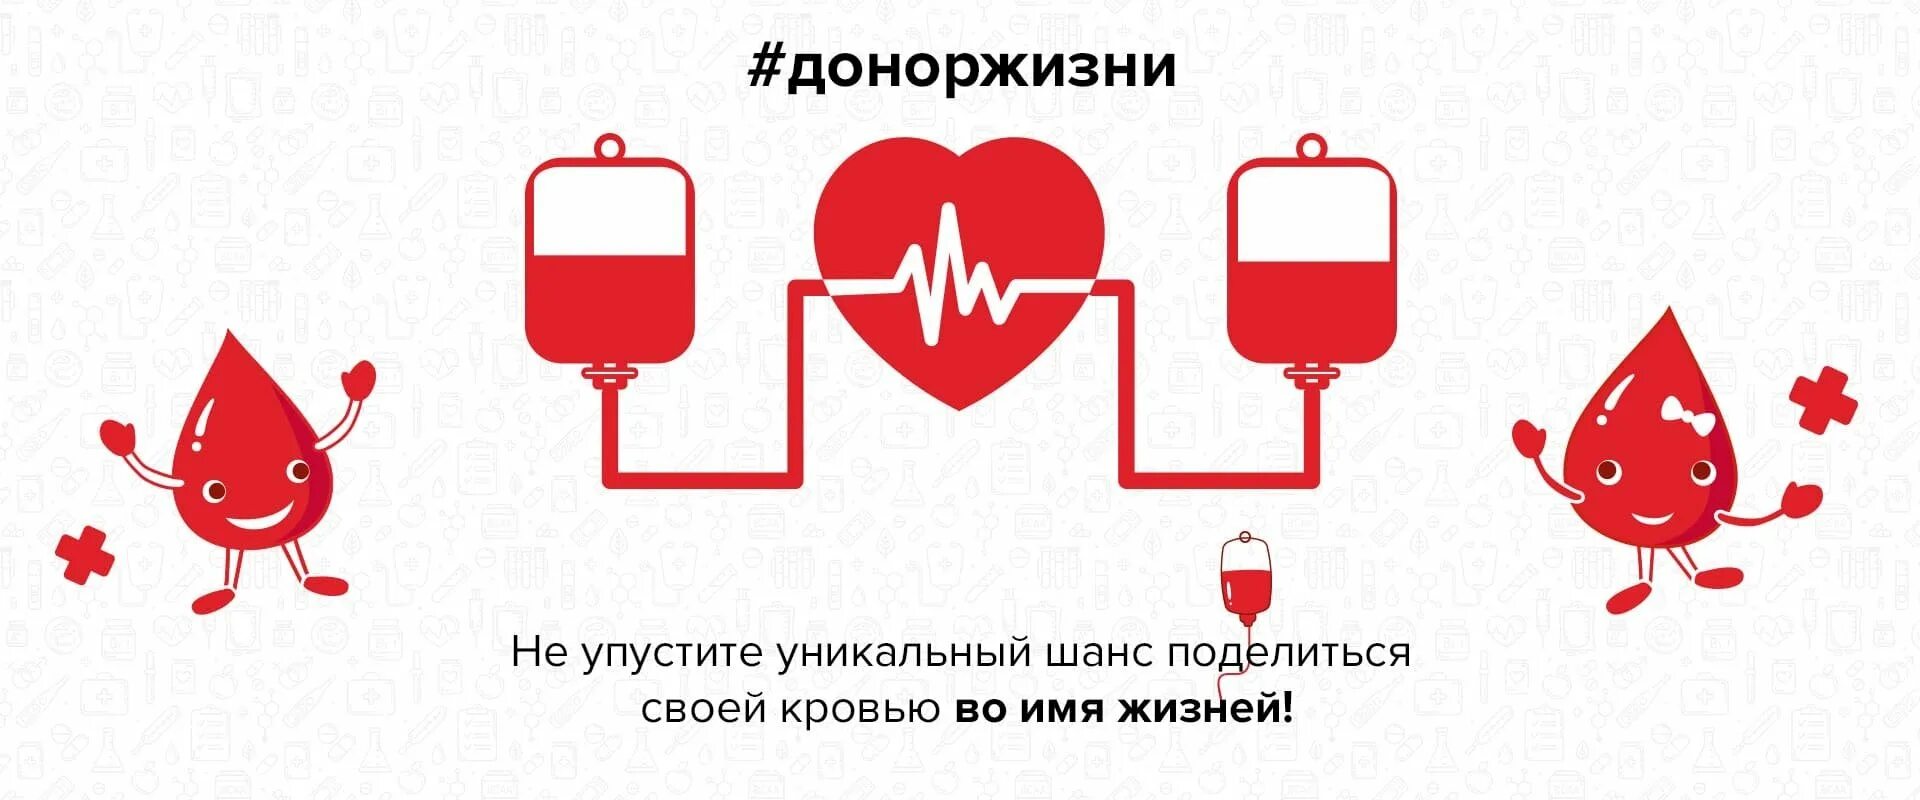 Донор спас. Донорство картинки. Донорство крови плакат. Донорство рисунок. Донорство крови рисунок.